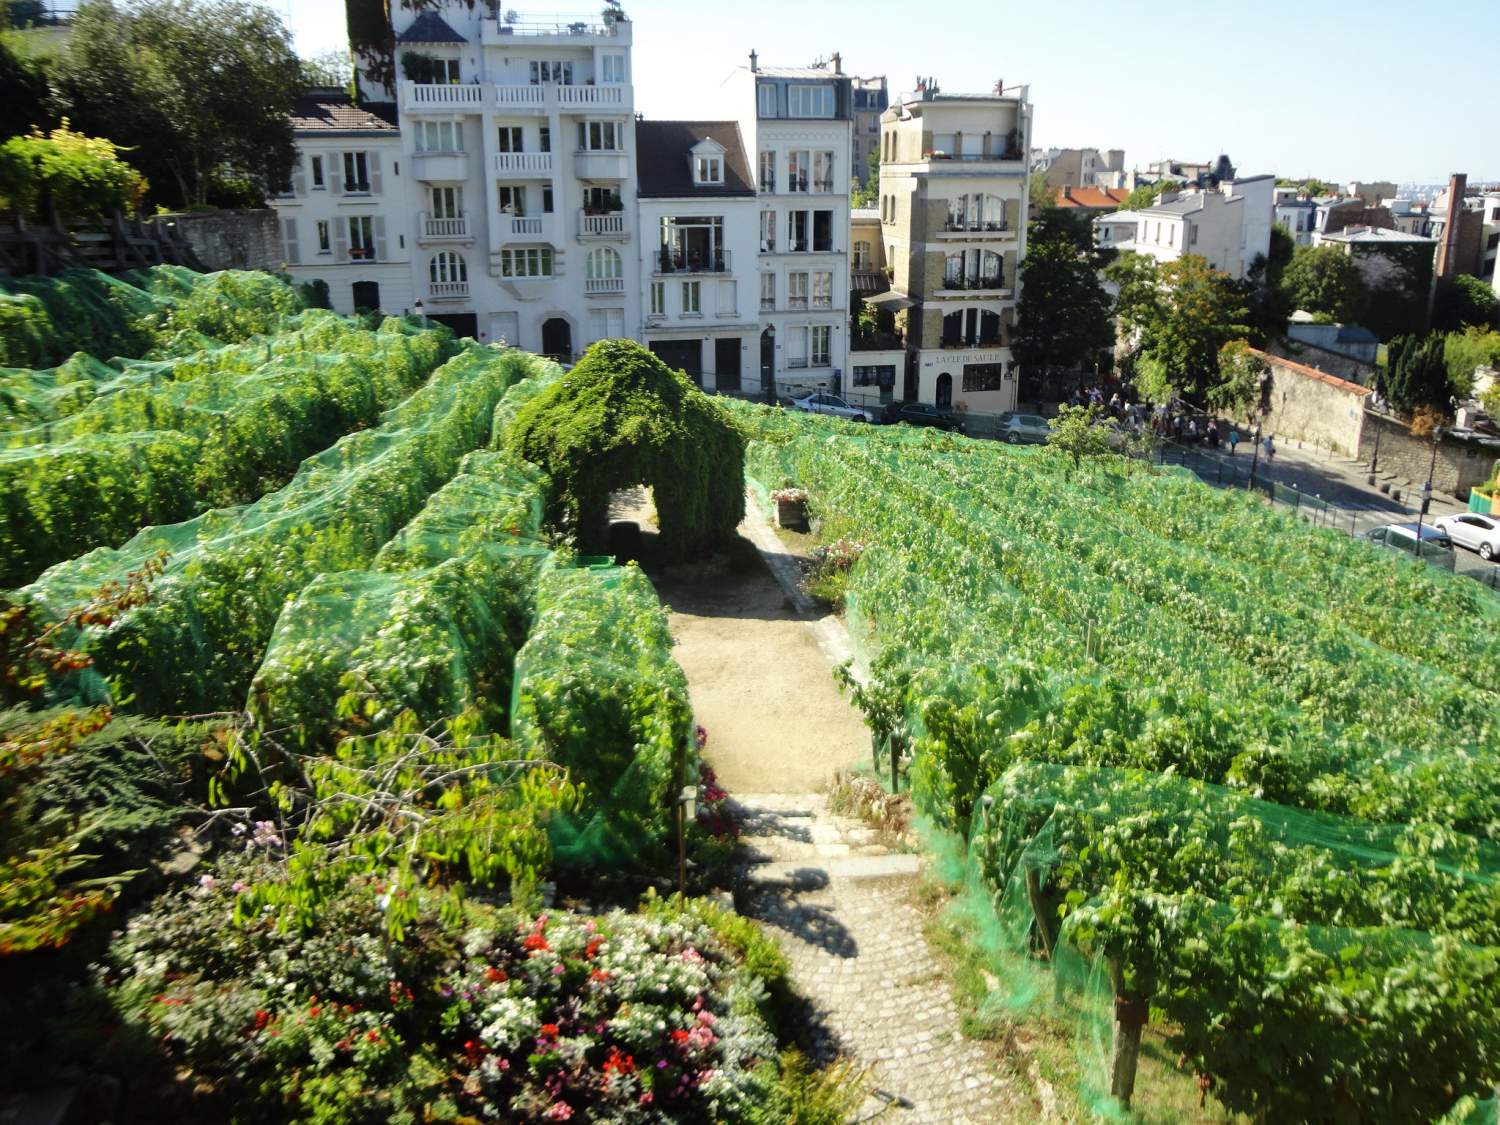 Vines in Montmartre